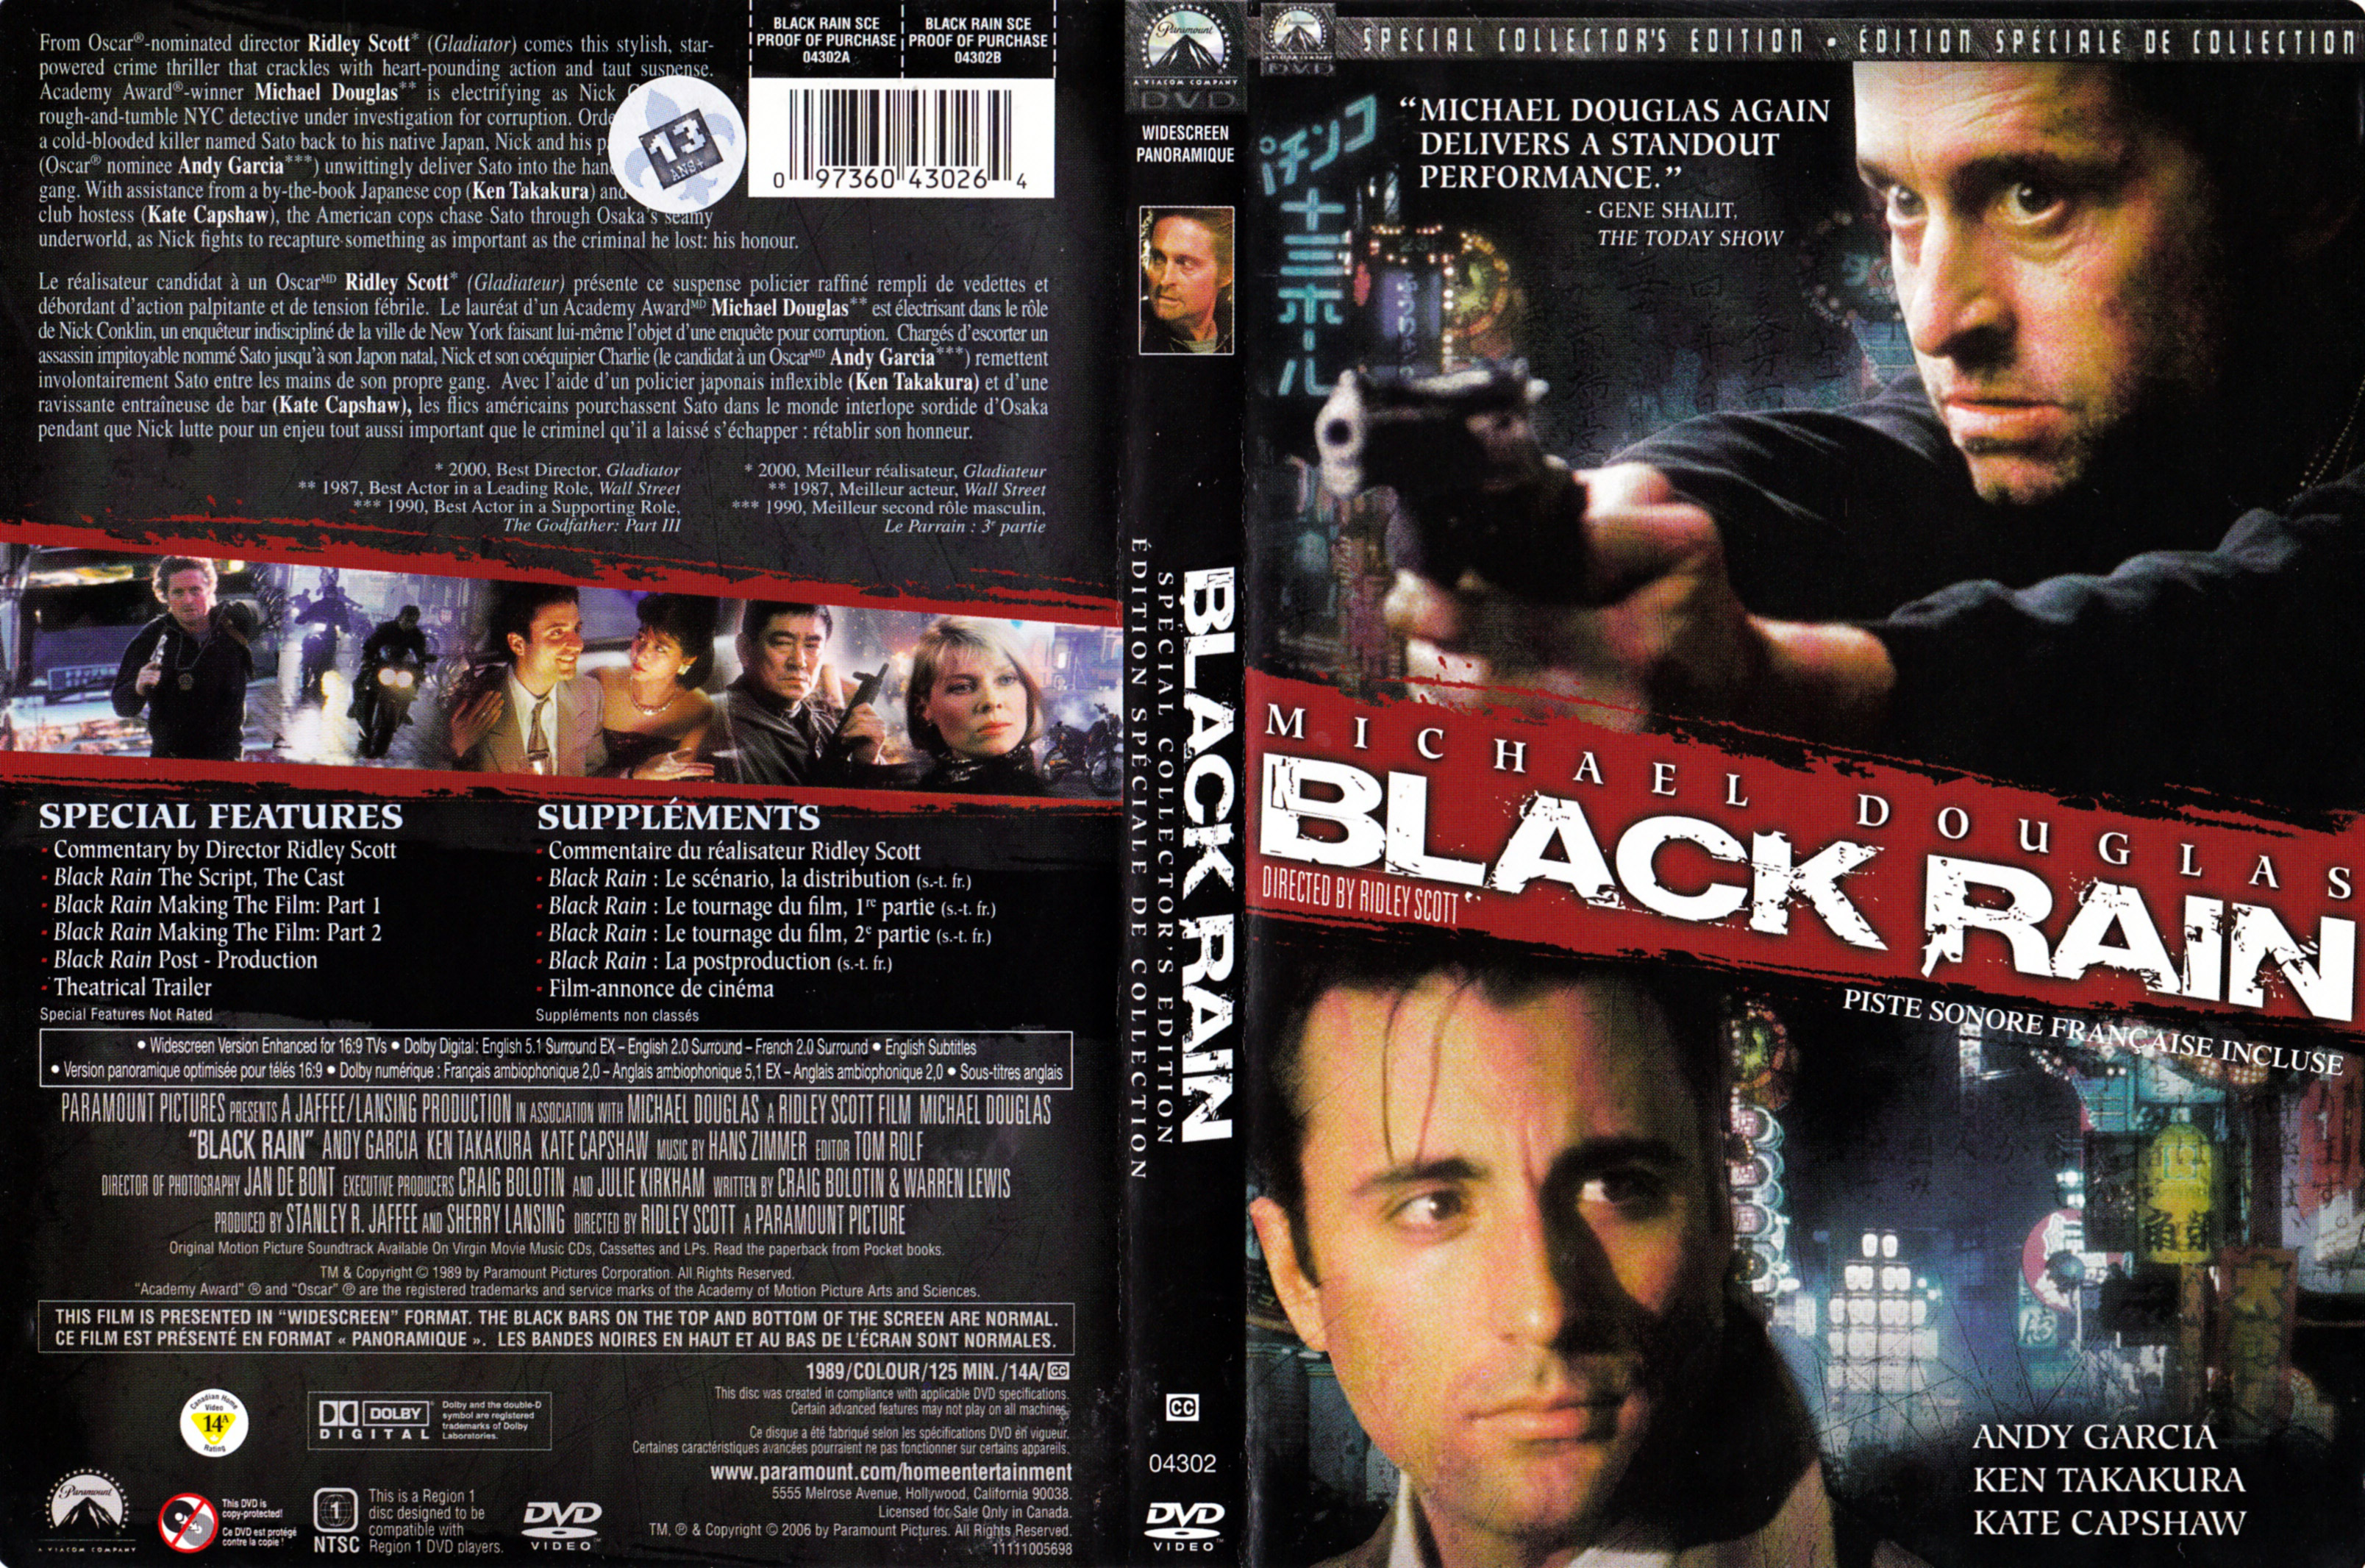 Jaquette DVD Black rain (Canadienne)